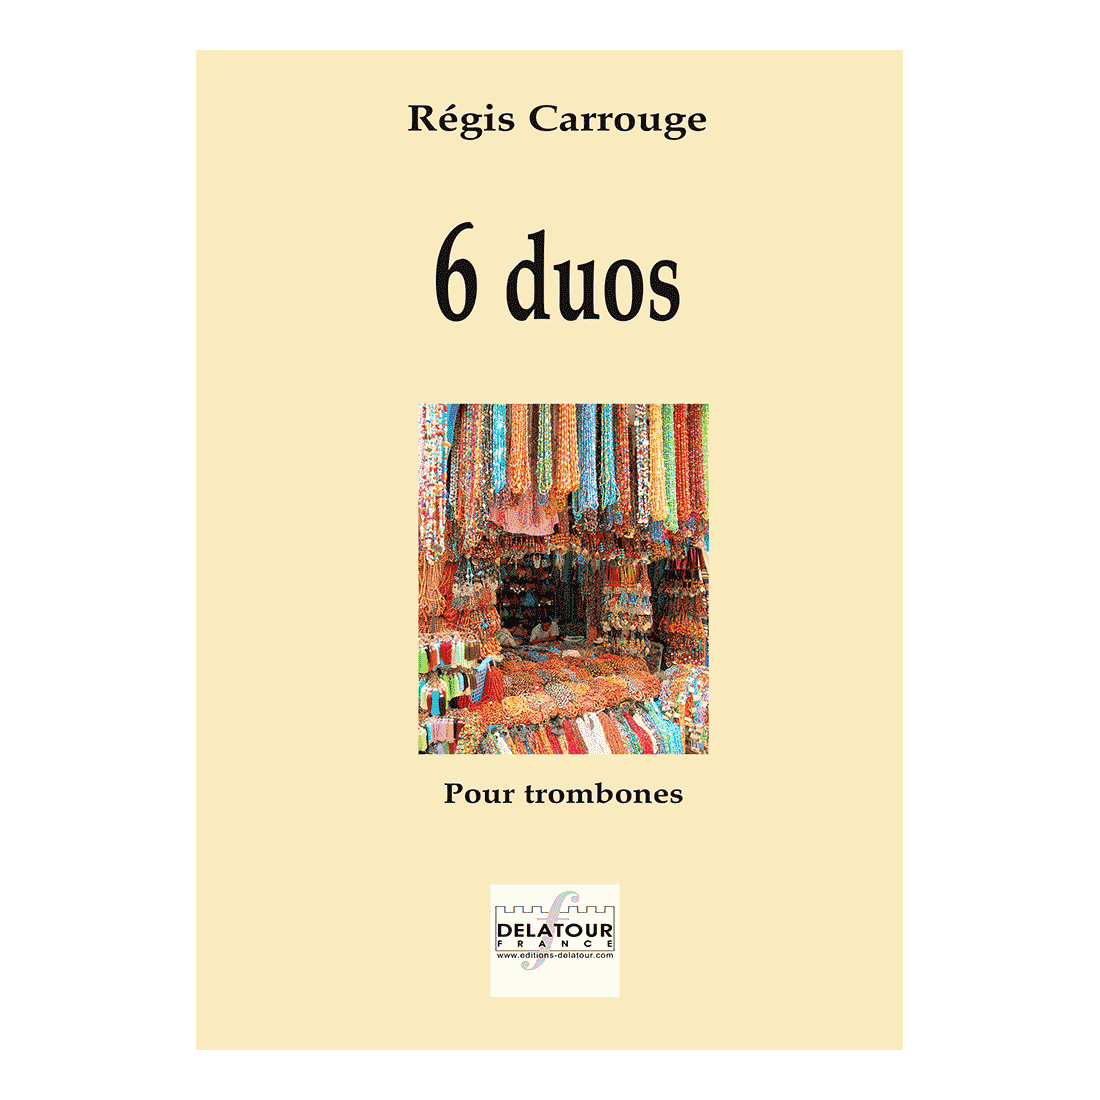 6 duets for 2 trombones